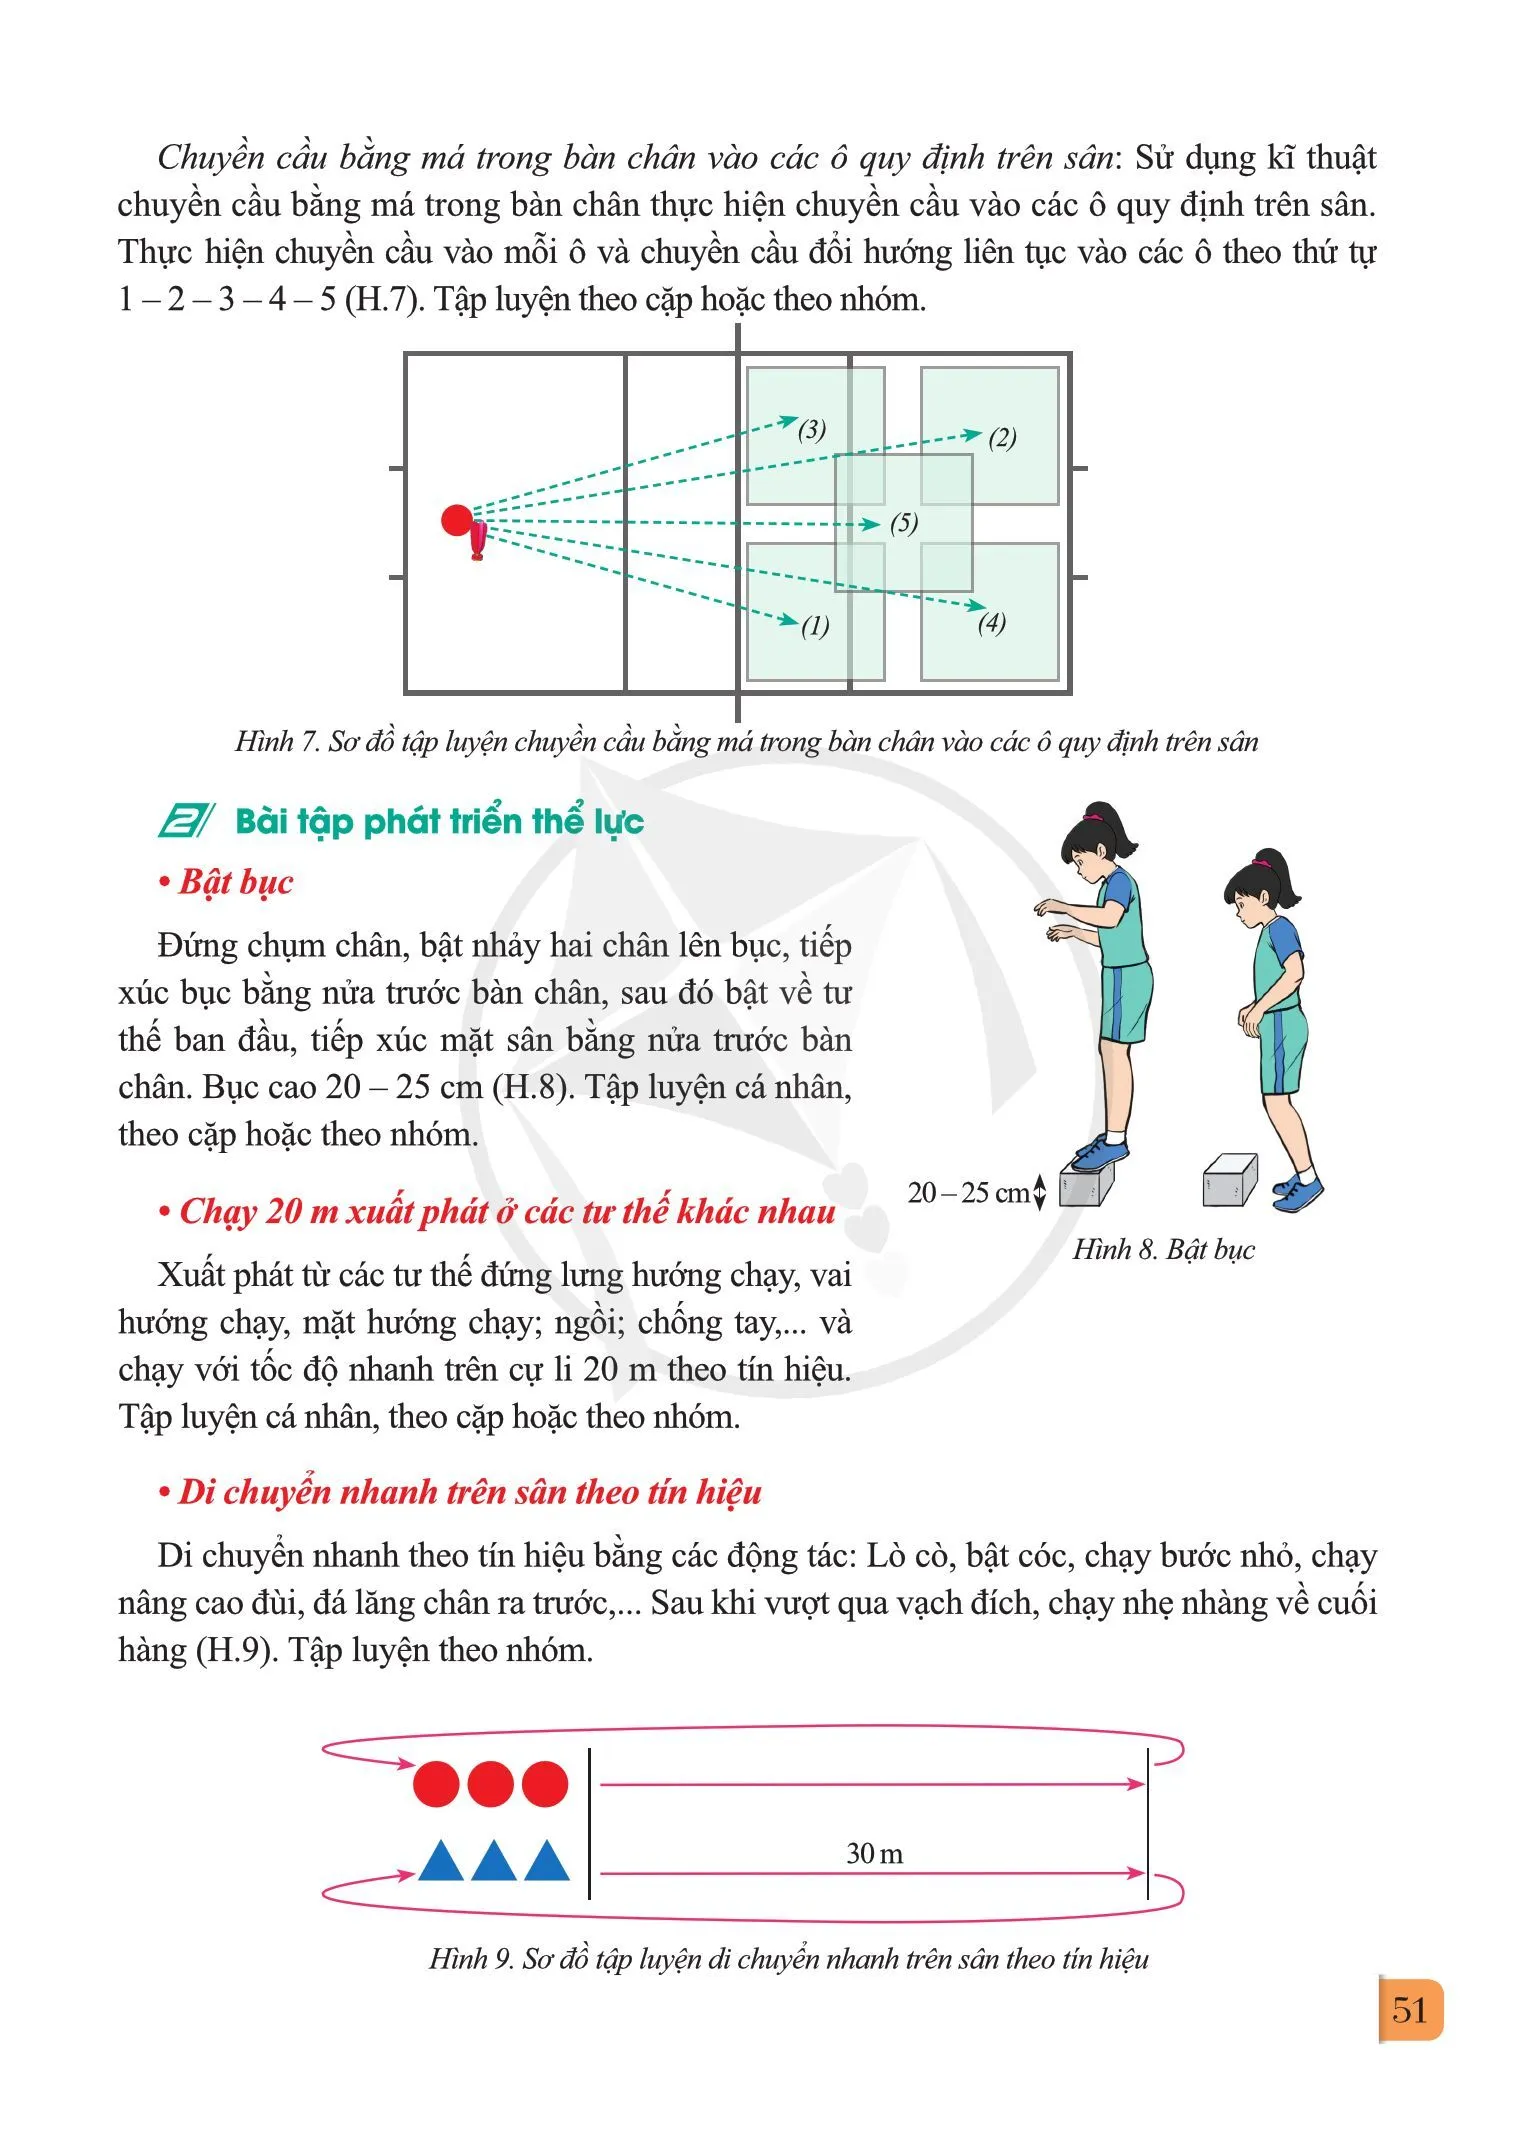 Bài 2. Kĩ thuật chuyền cầu bằng má trong bàn chân